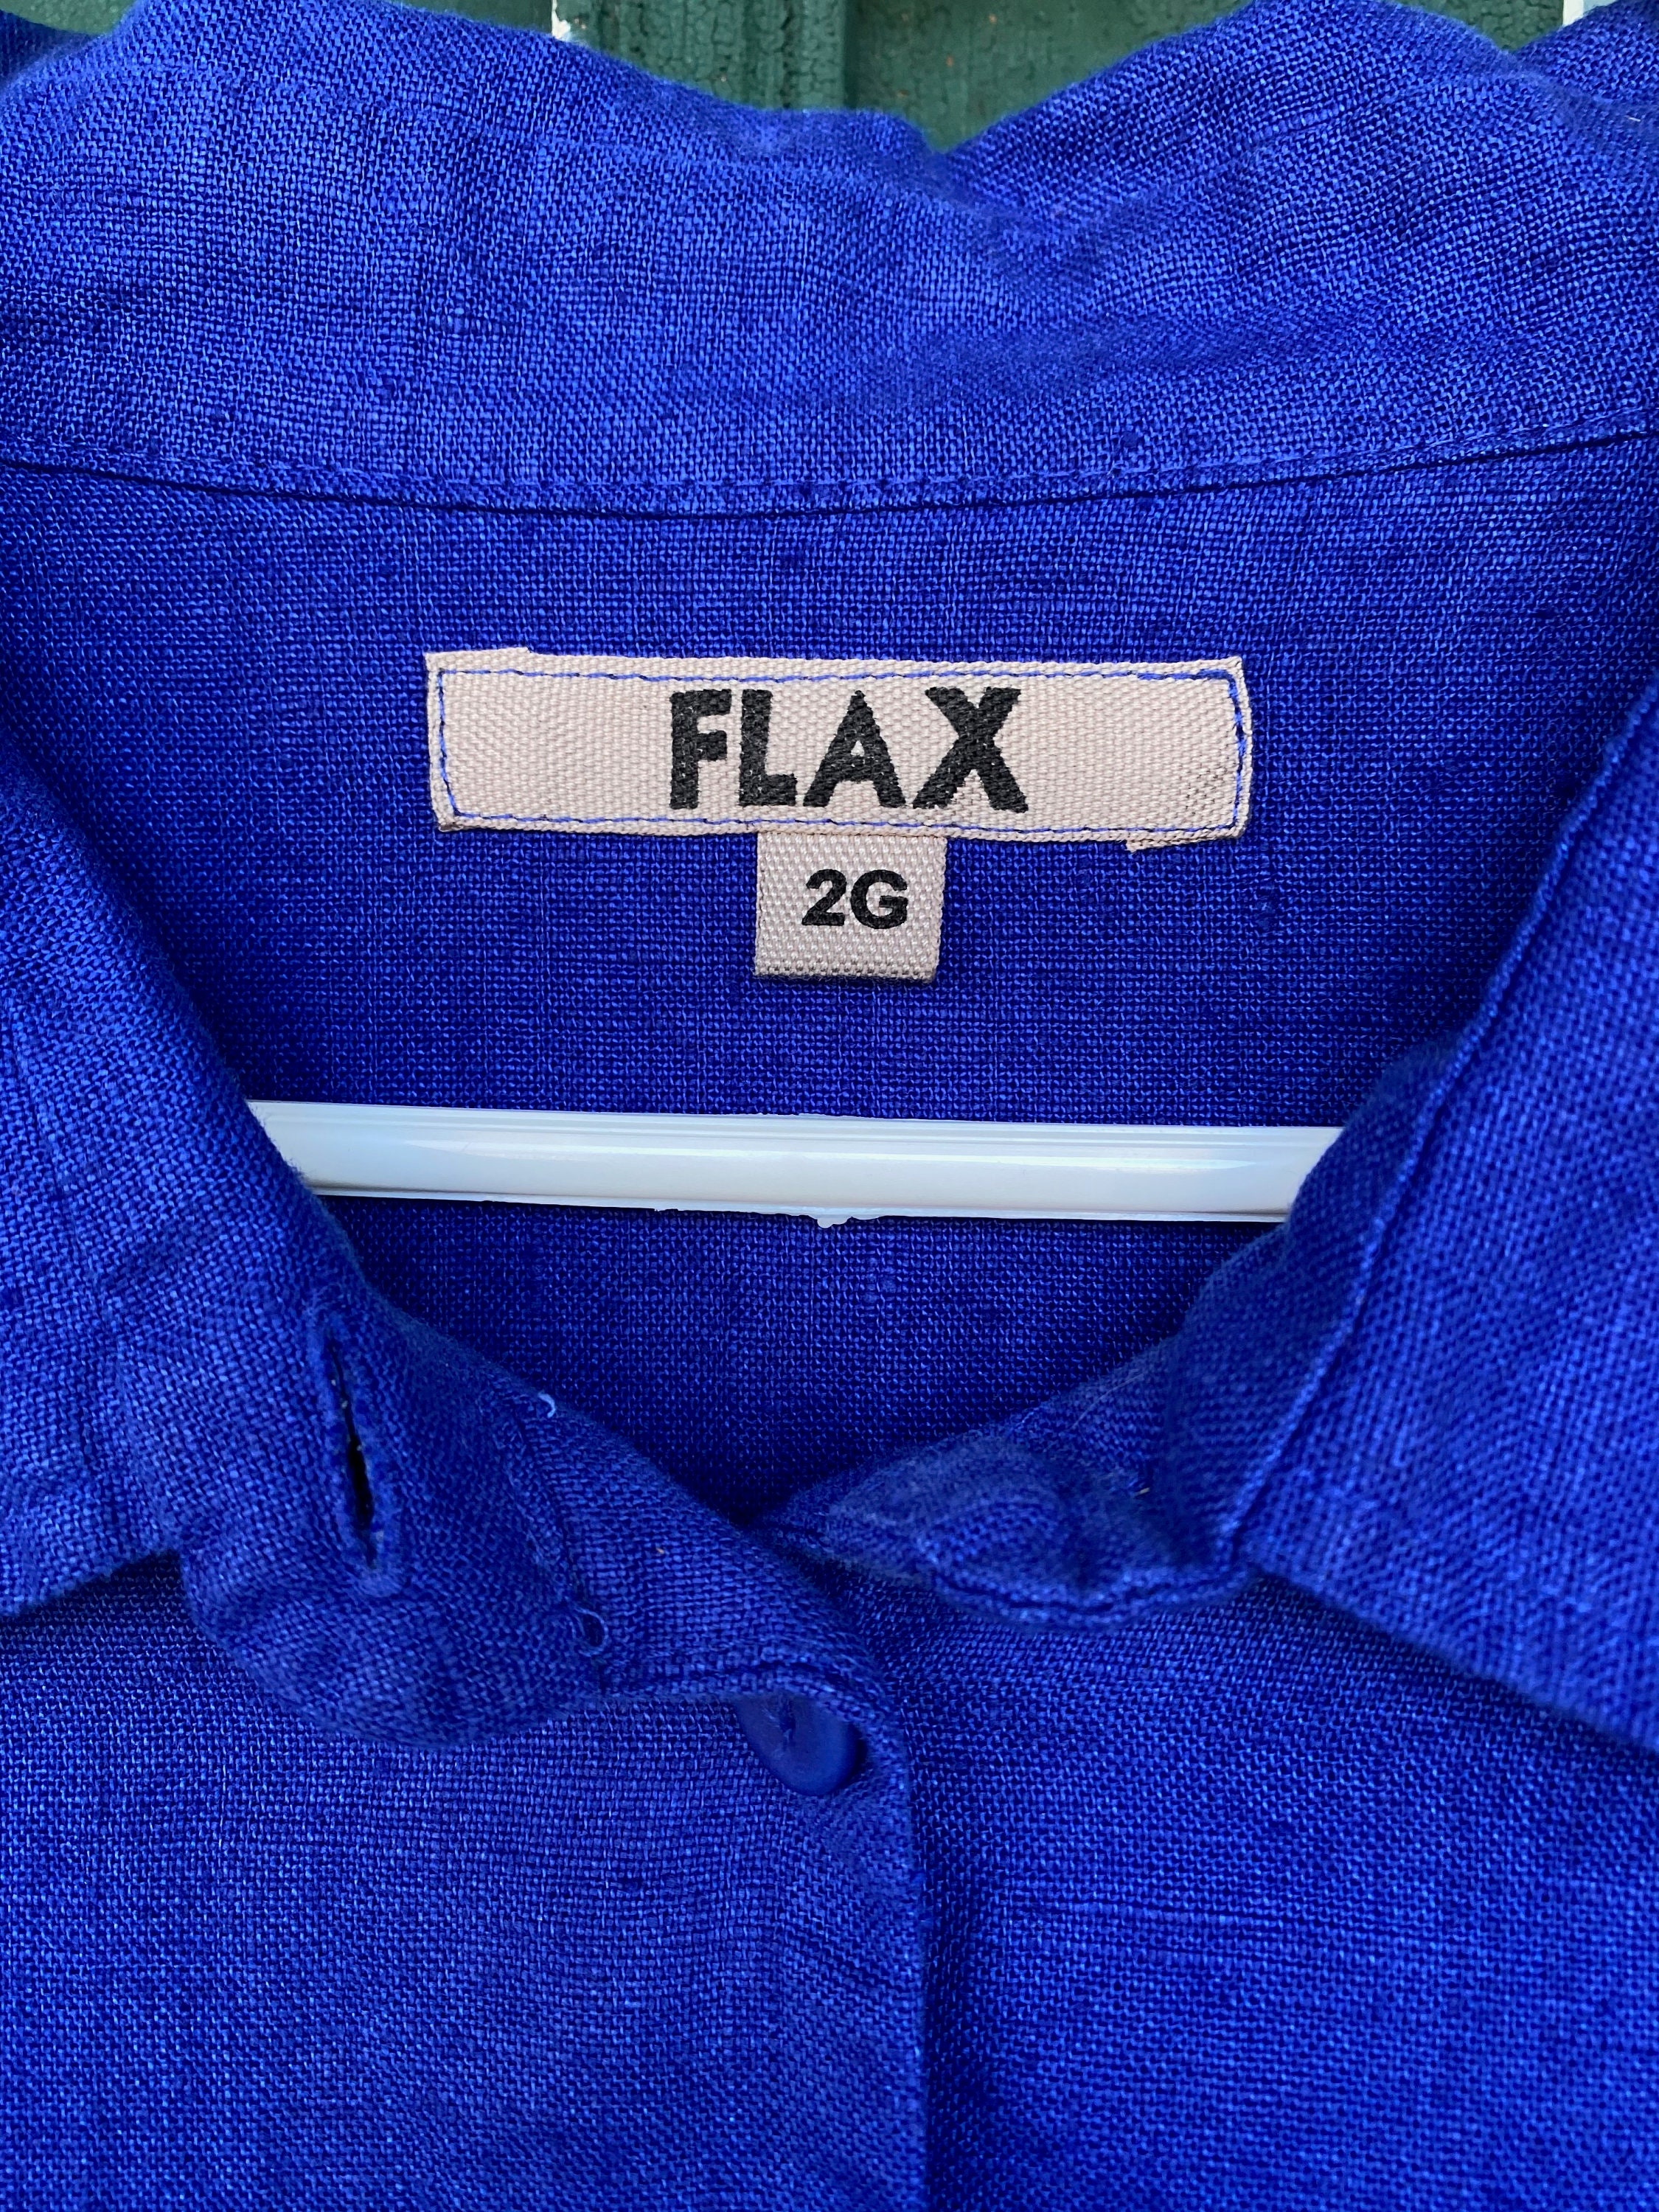 FLAX 3/4 Sleeve Shirt Jacket -2G/2X- Royal Blue Linen